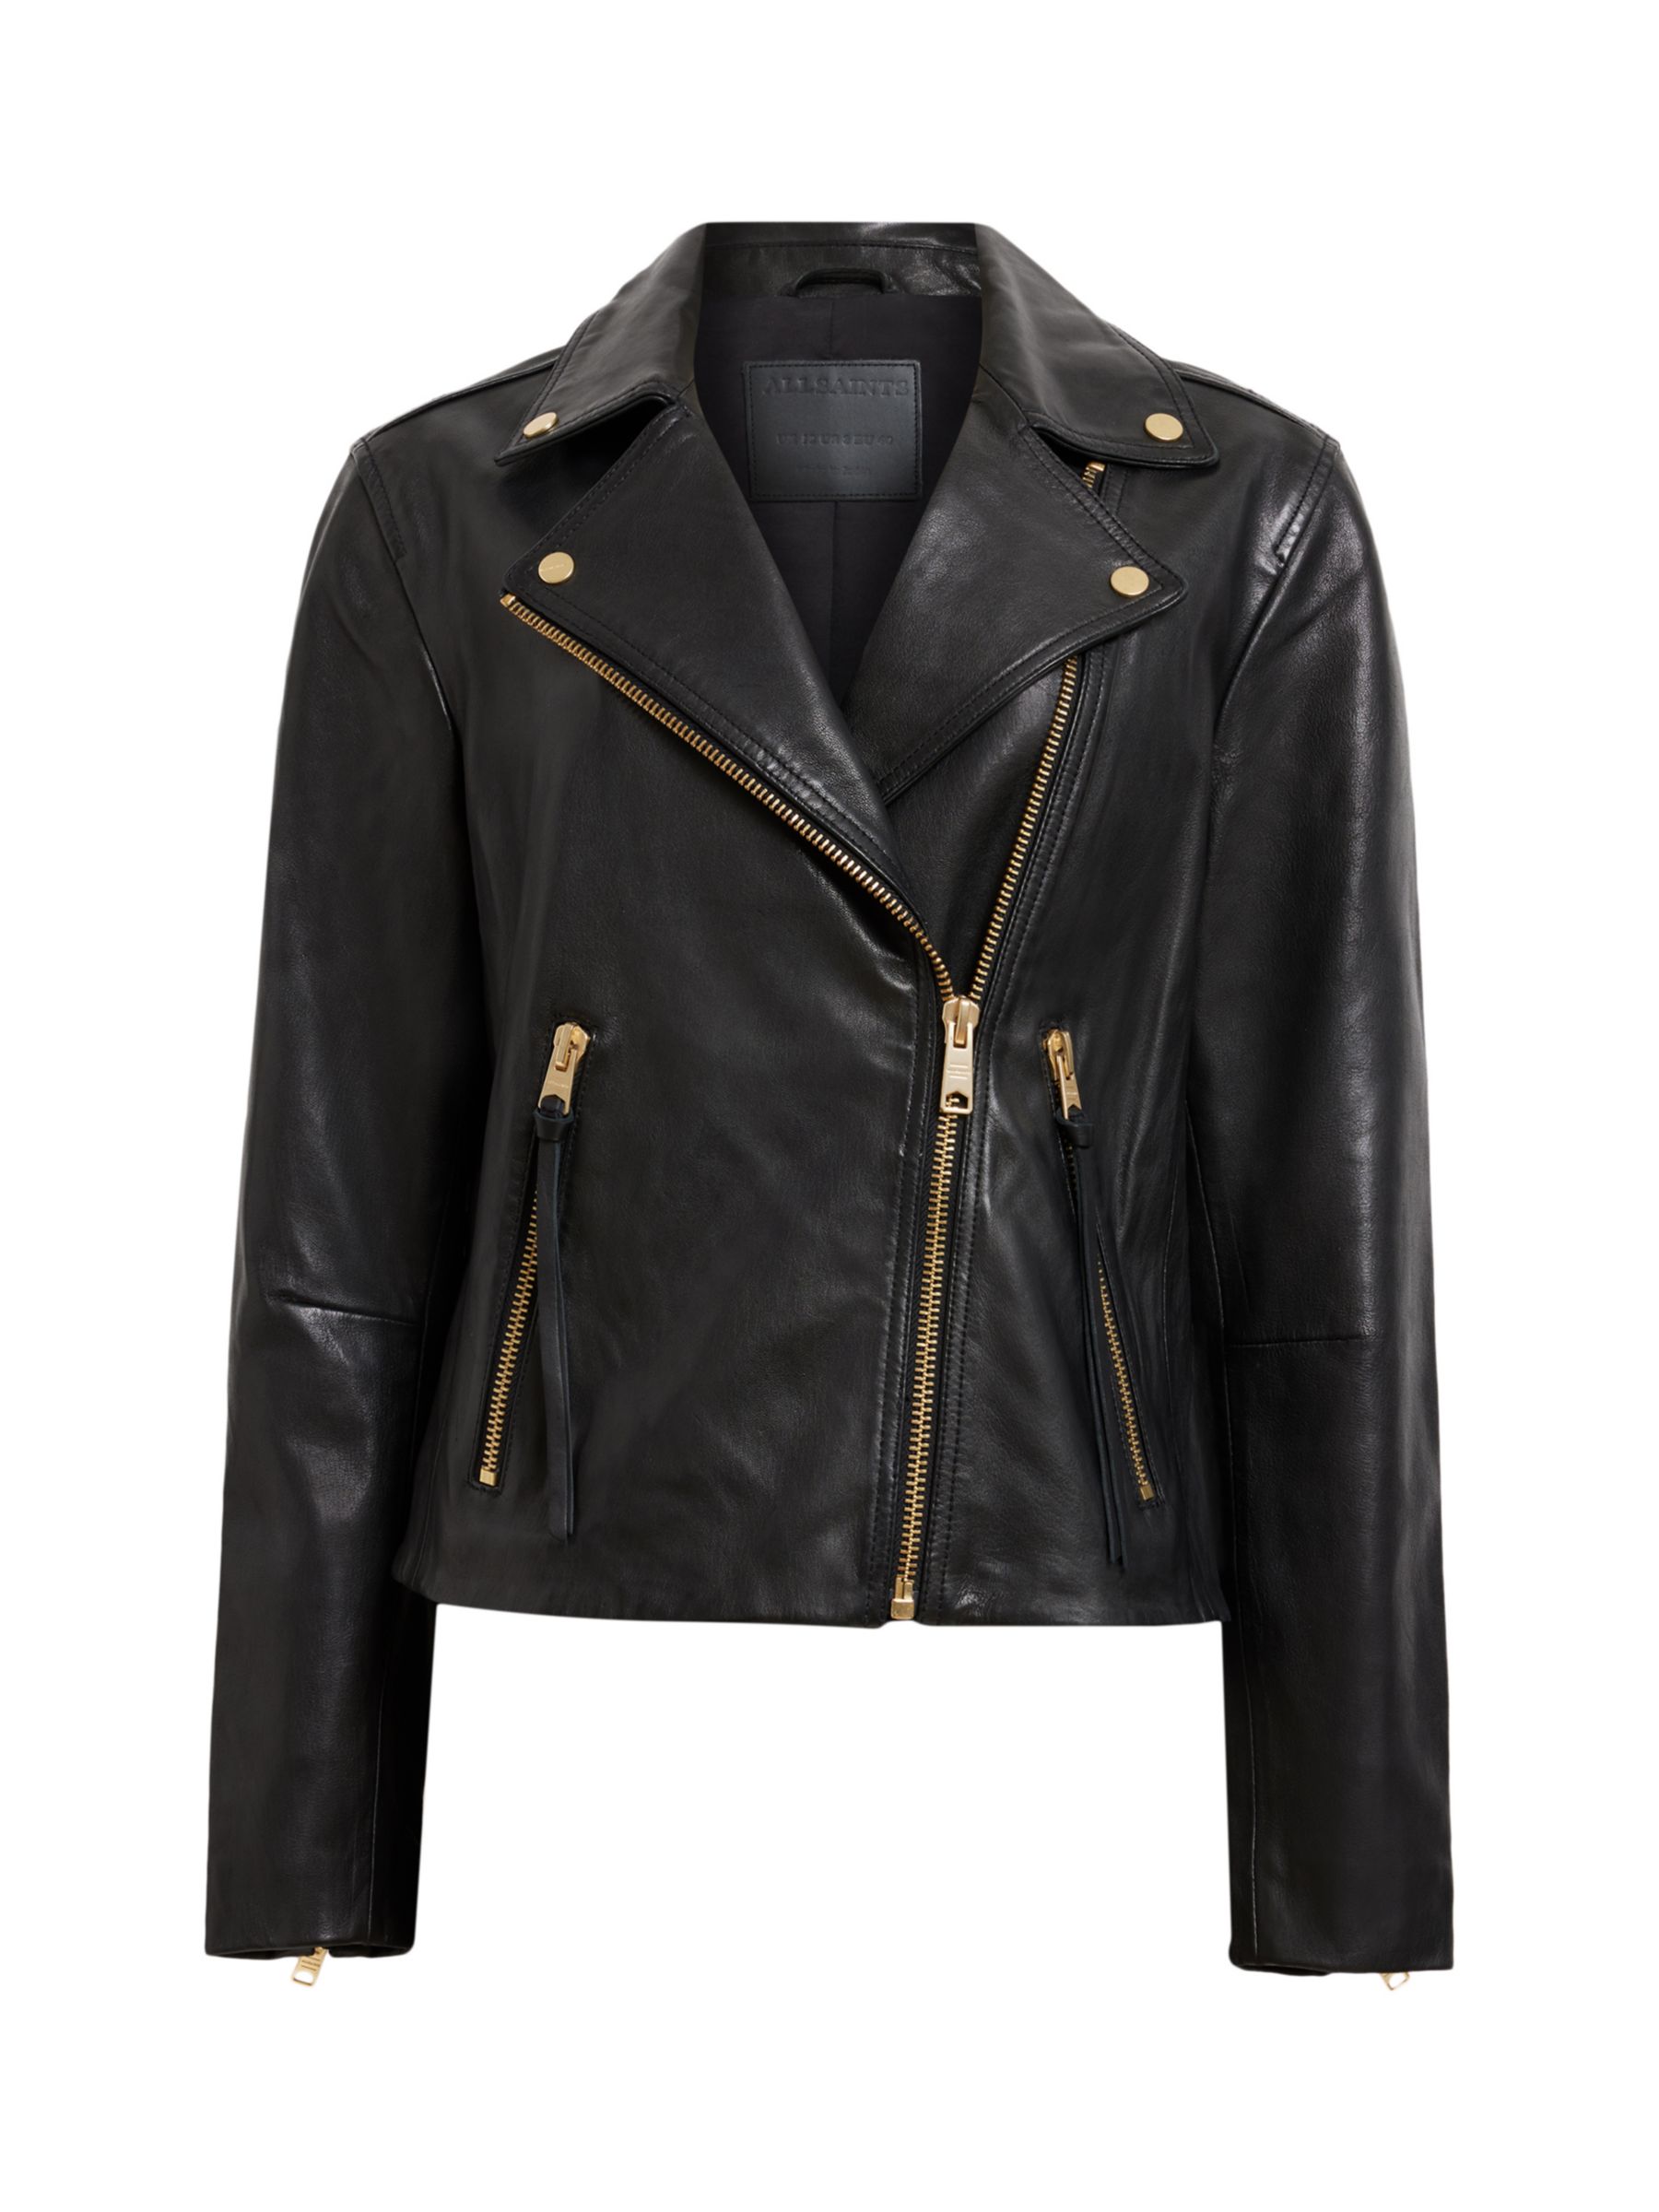 Buy AllSaints Dalby Leather Biker Jacket, Black/Gold Online at johnlewis.com